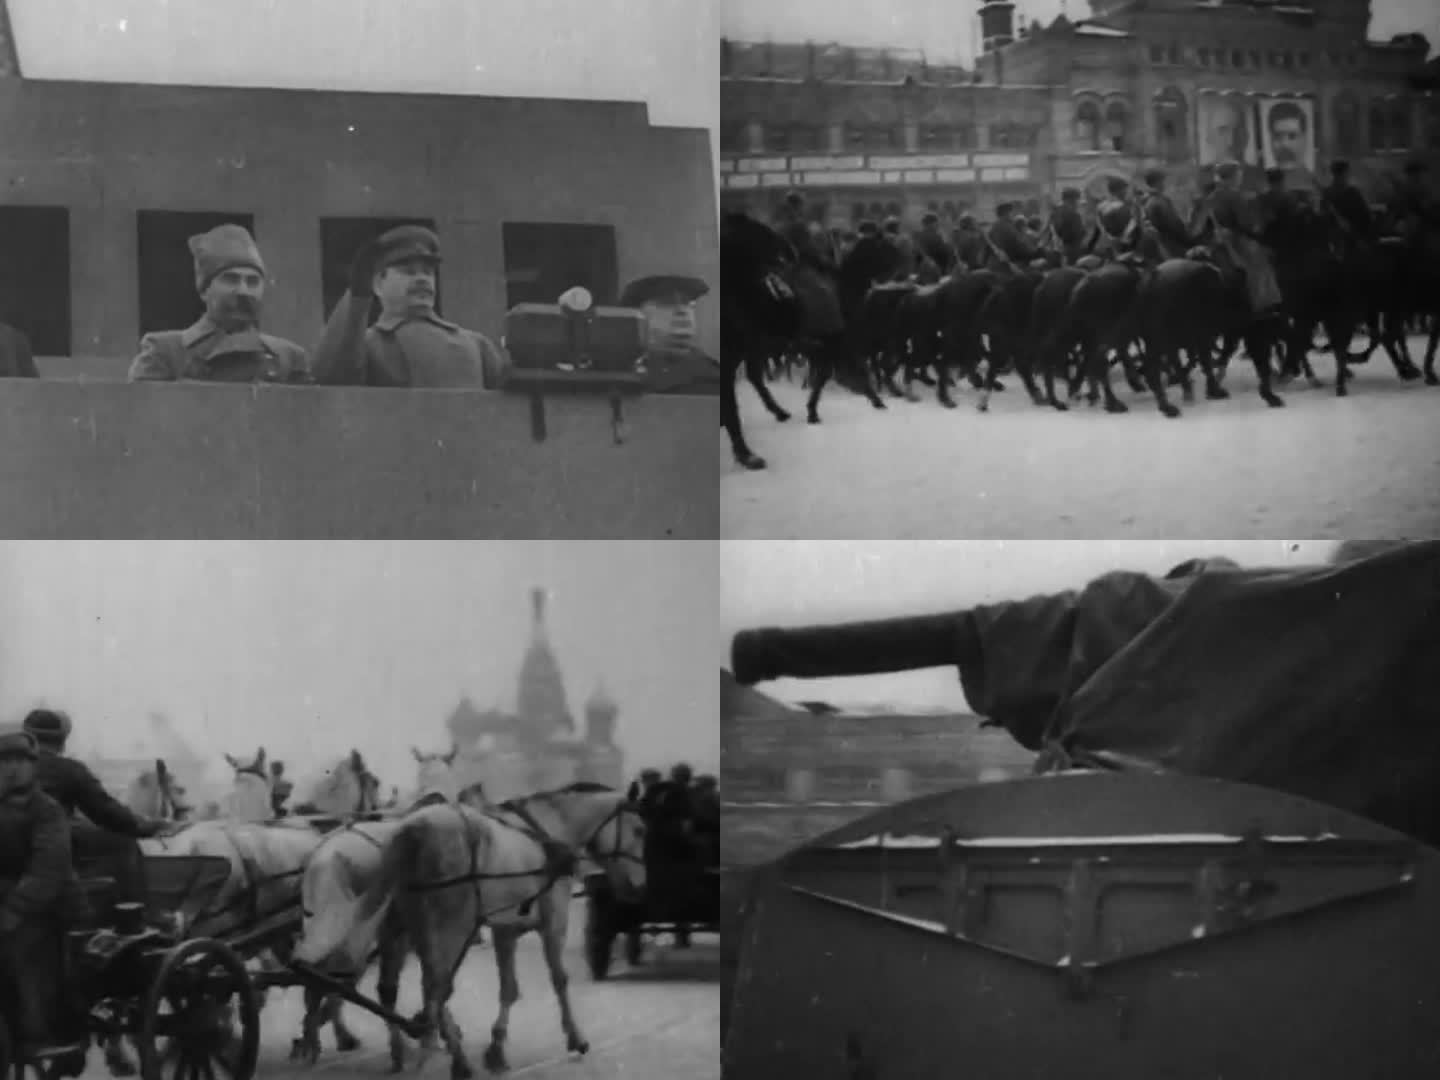 1945年苏联红场阅兵仪式4视频素材,历史军事视频素材下载,高清1920X1080视频素材下载,凌点视频素材网,编号:661197